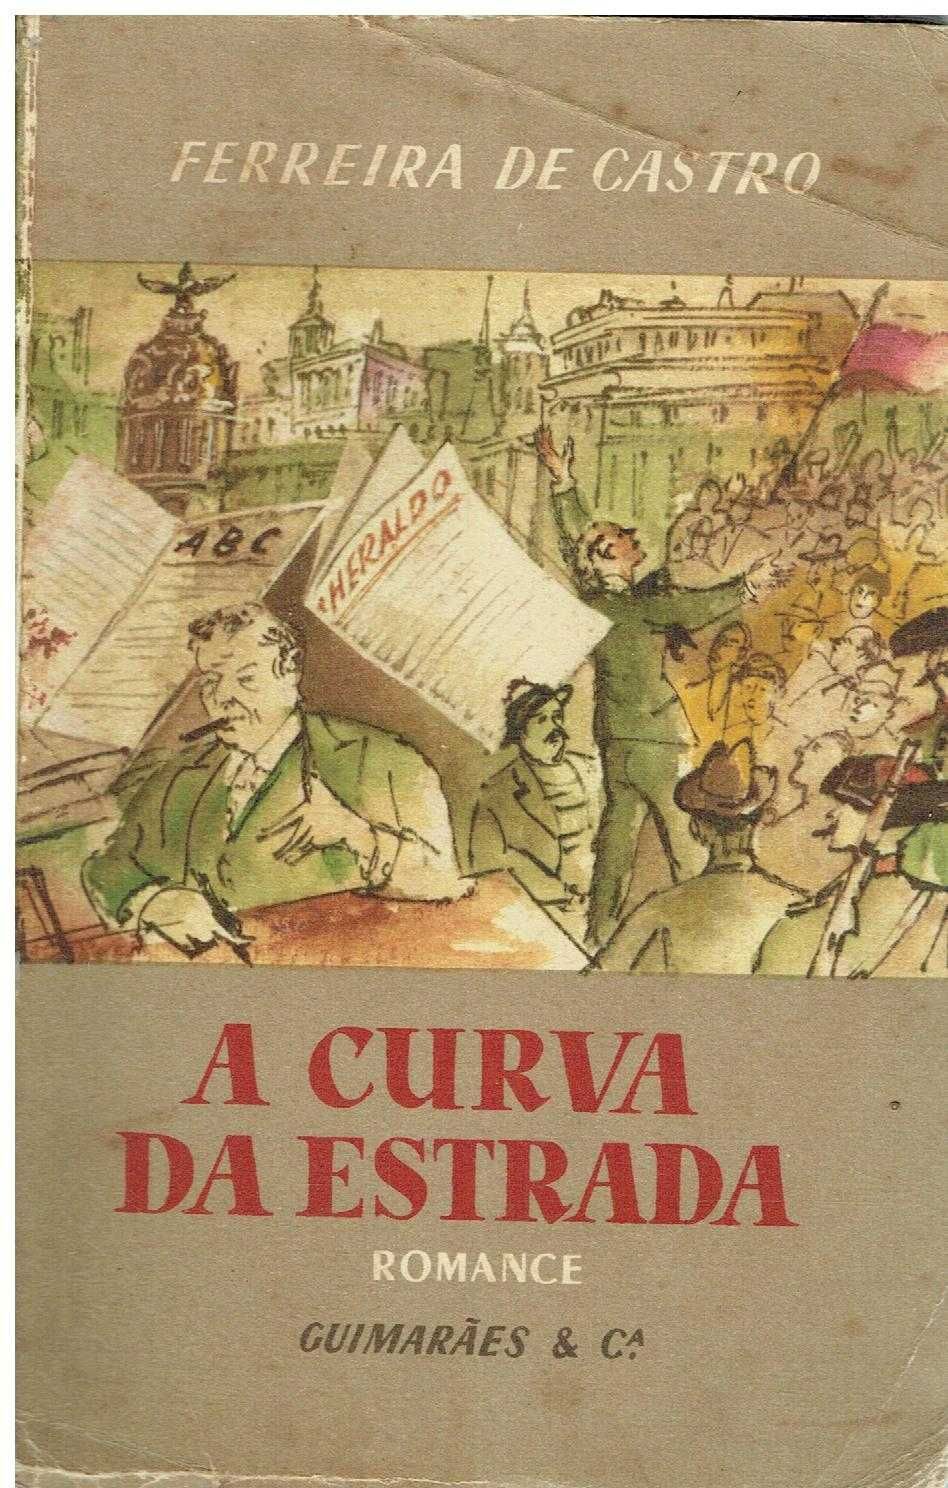 2134

Livros de Ferreira de Castro